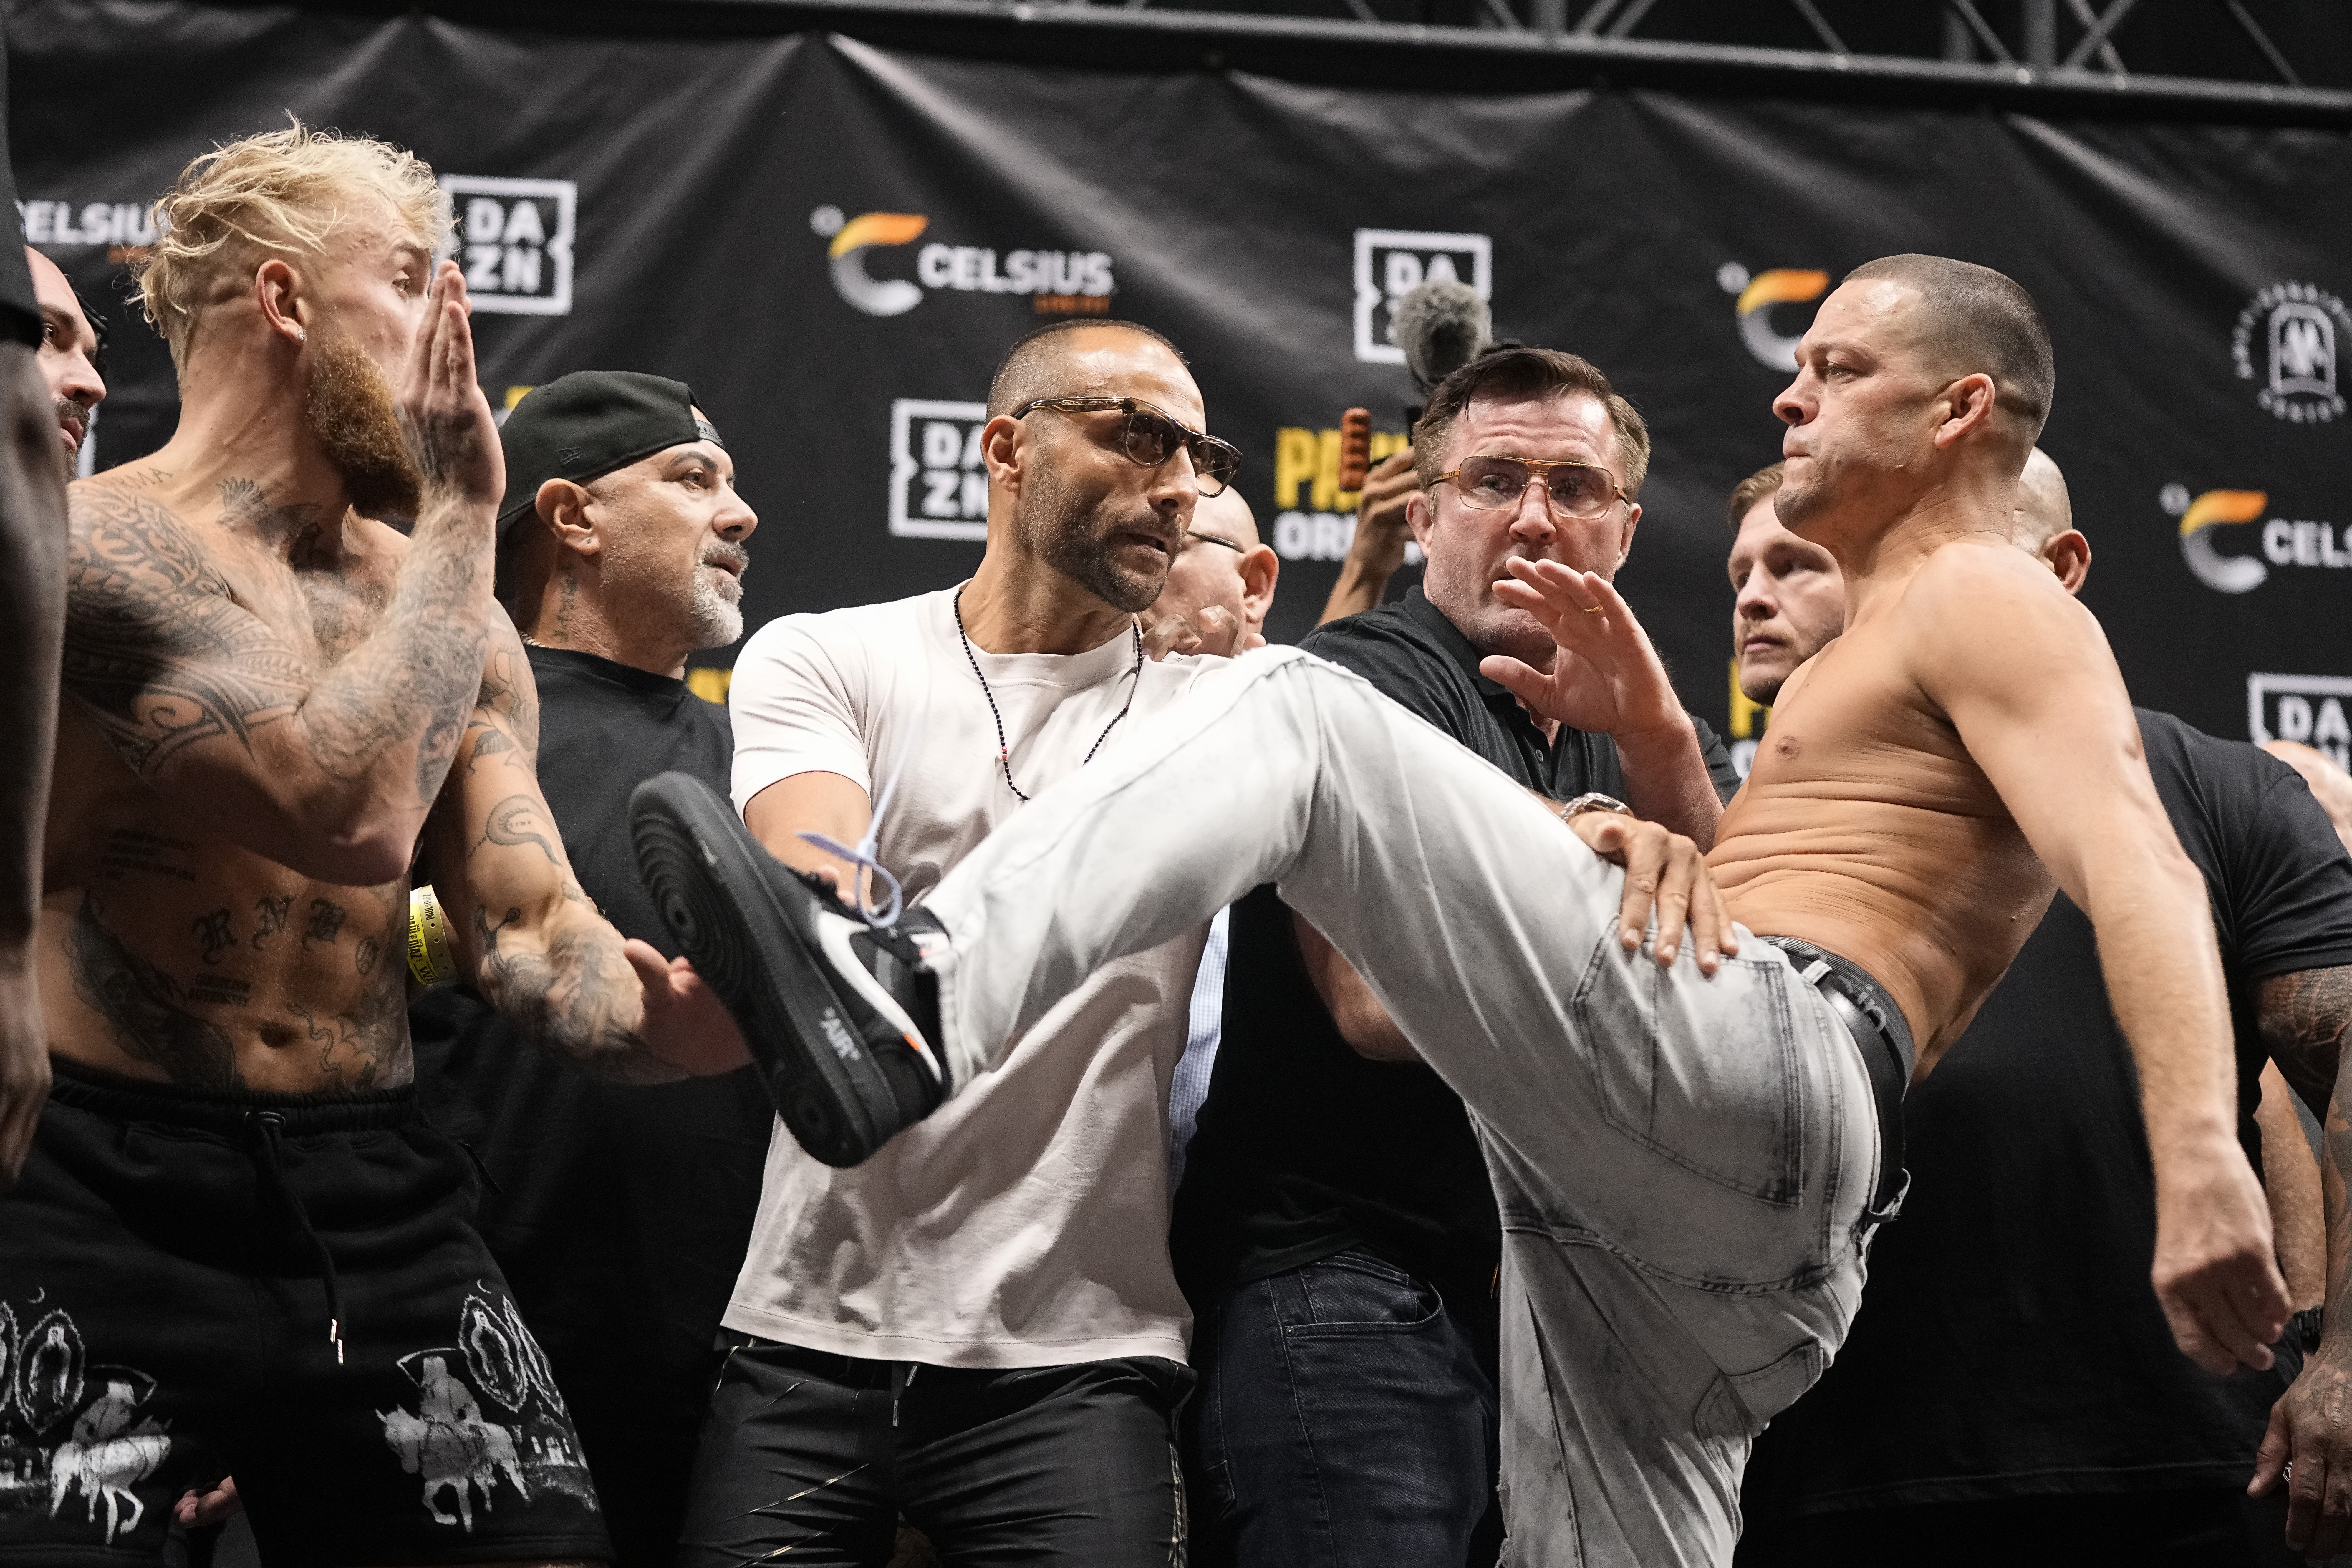 Der frühere UFC-Star Diaz versuchte, das Sorgenkind zu treten, nachdem die Spannungen zunahmen